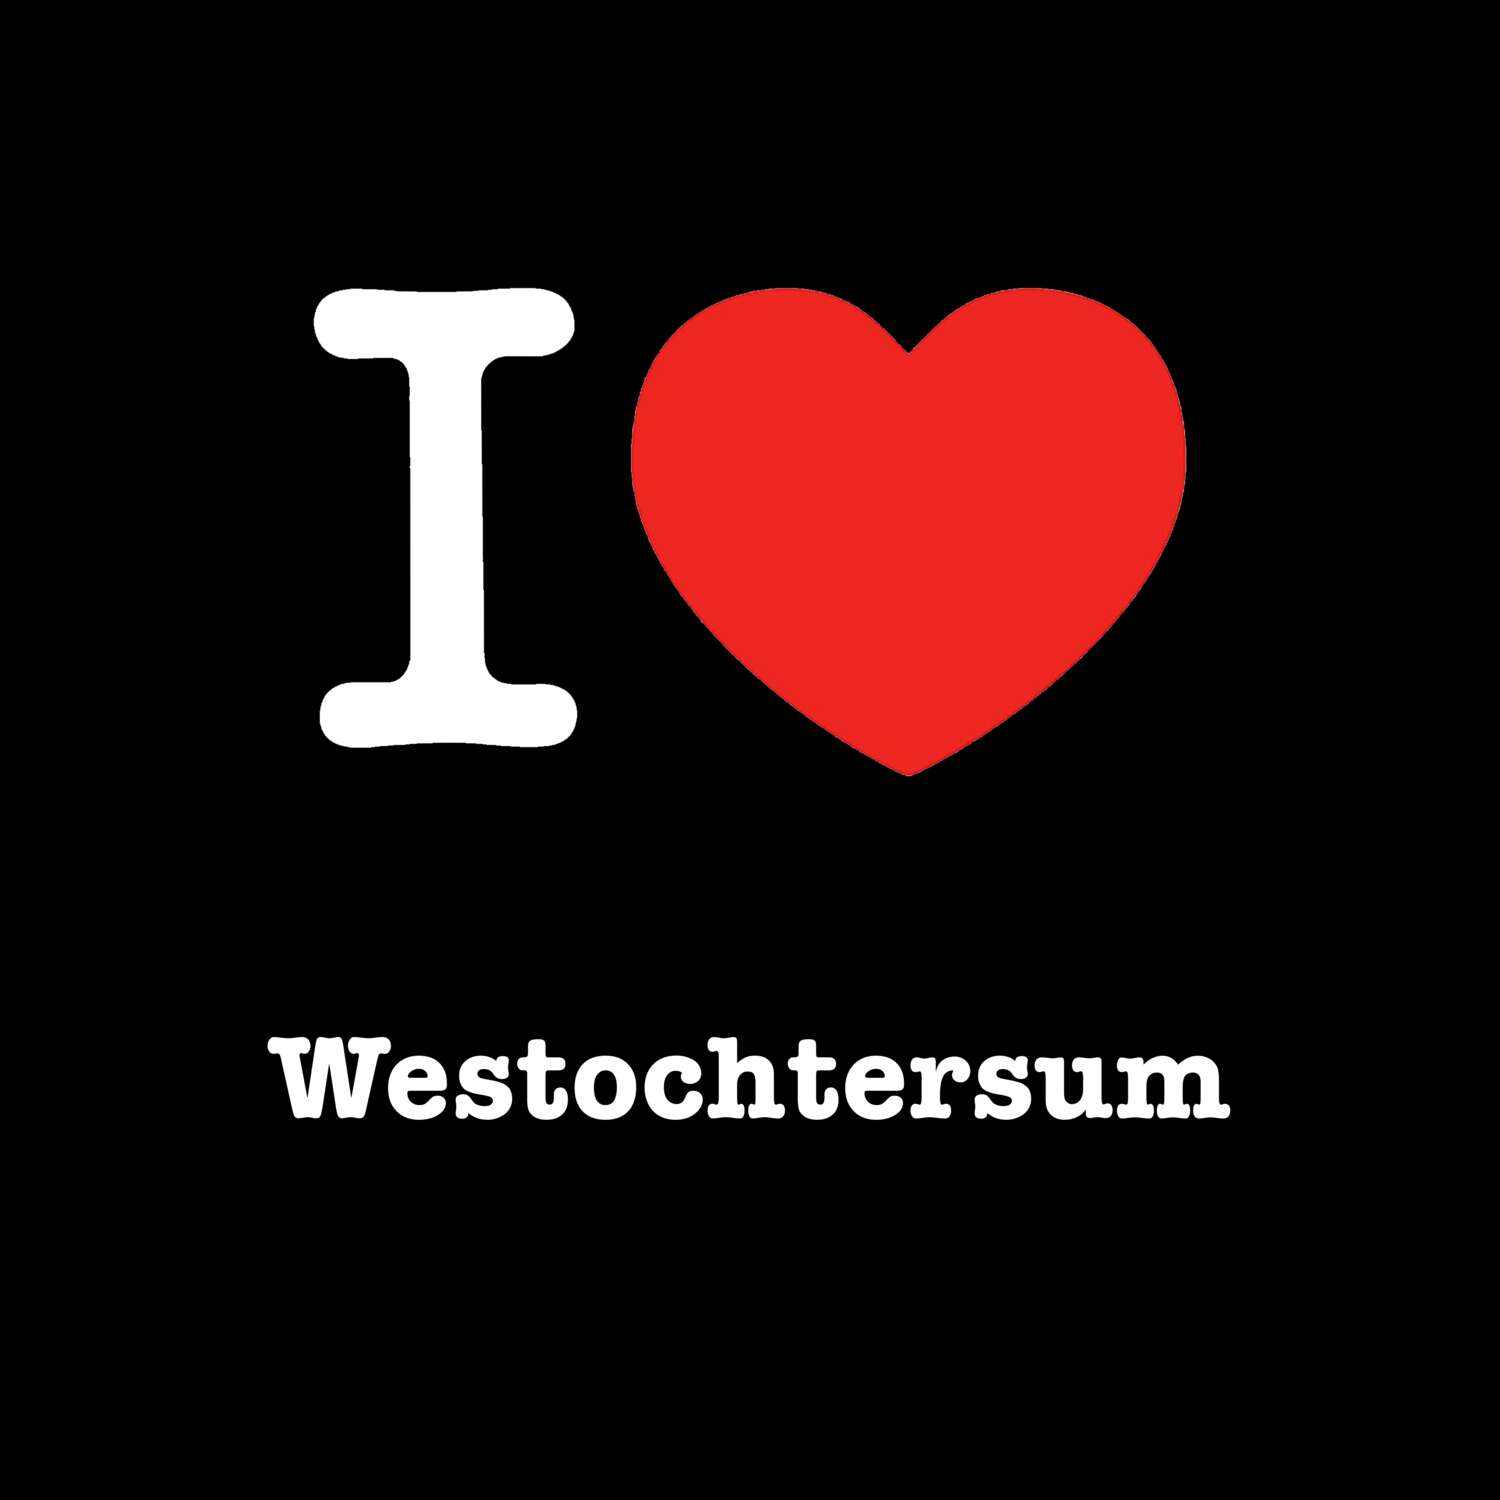 Westochtersum T-Shirt »I love«